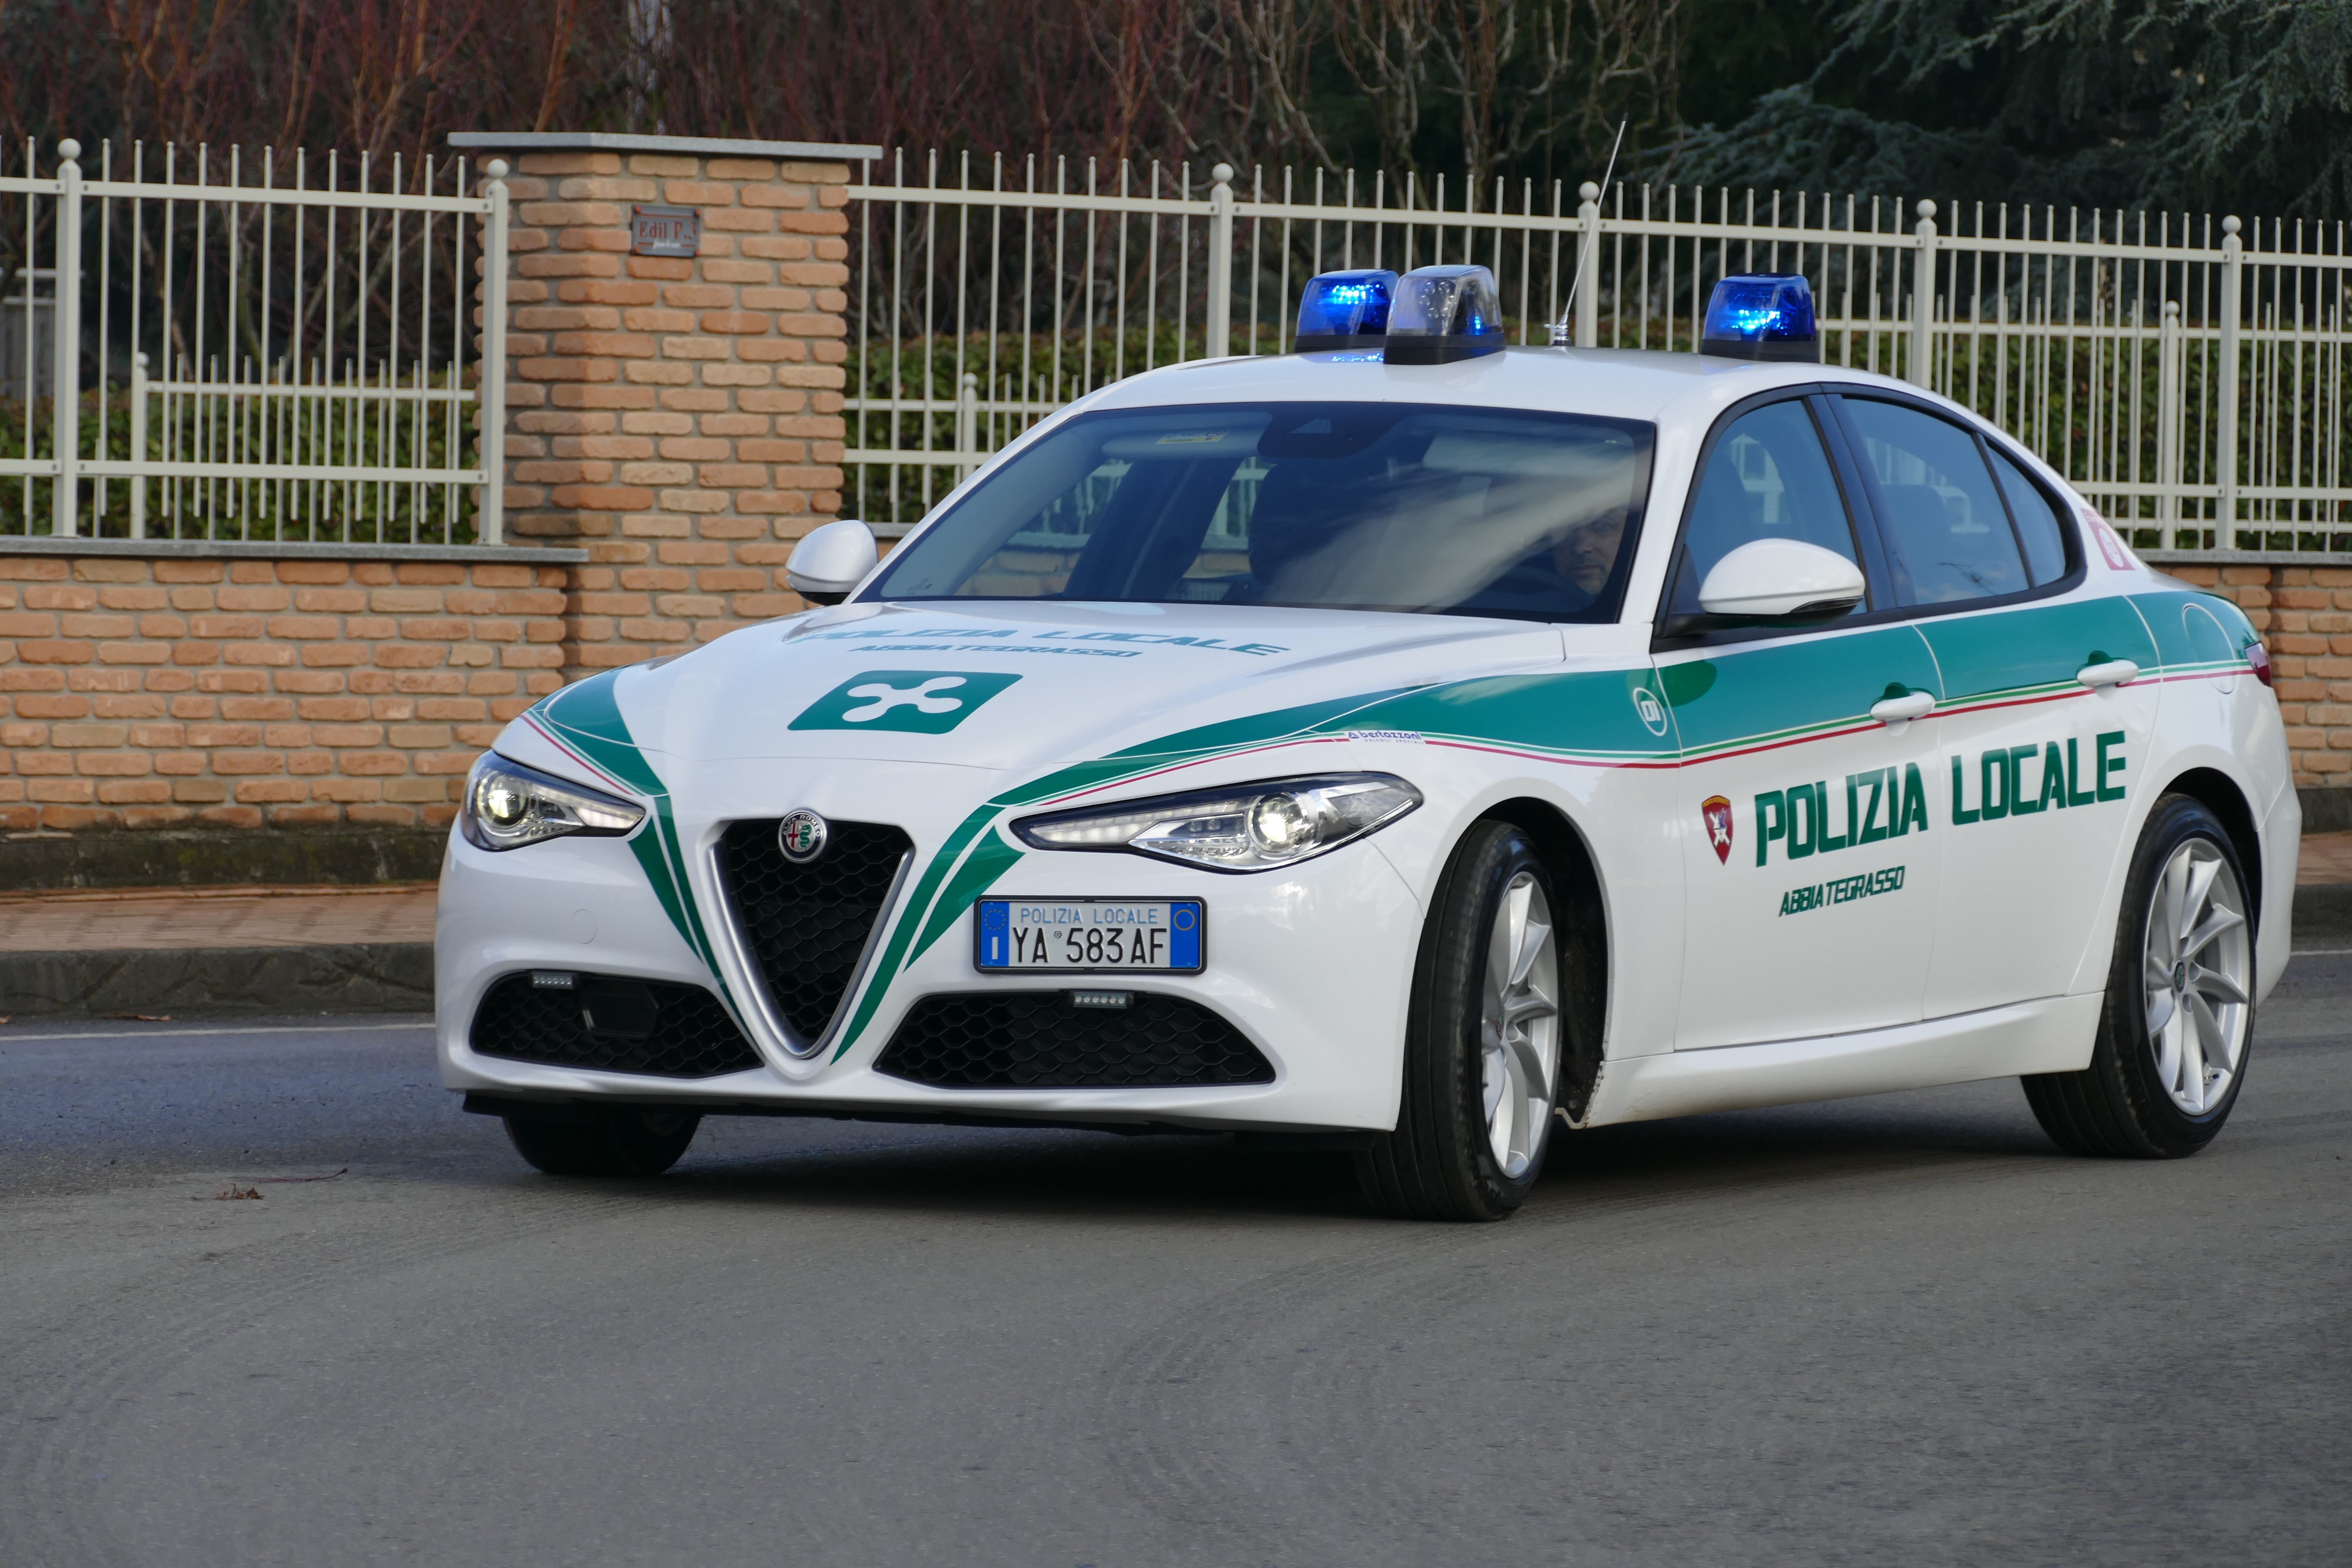 Polizia Locale reparto trasporto organi: Abbiategrasso crea il primo servizio in Italia su Alfa Romeo Giulia | Emergency Live 17